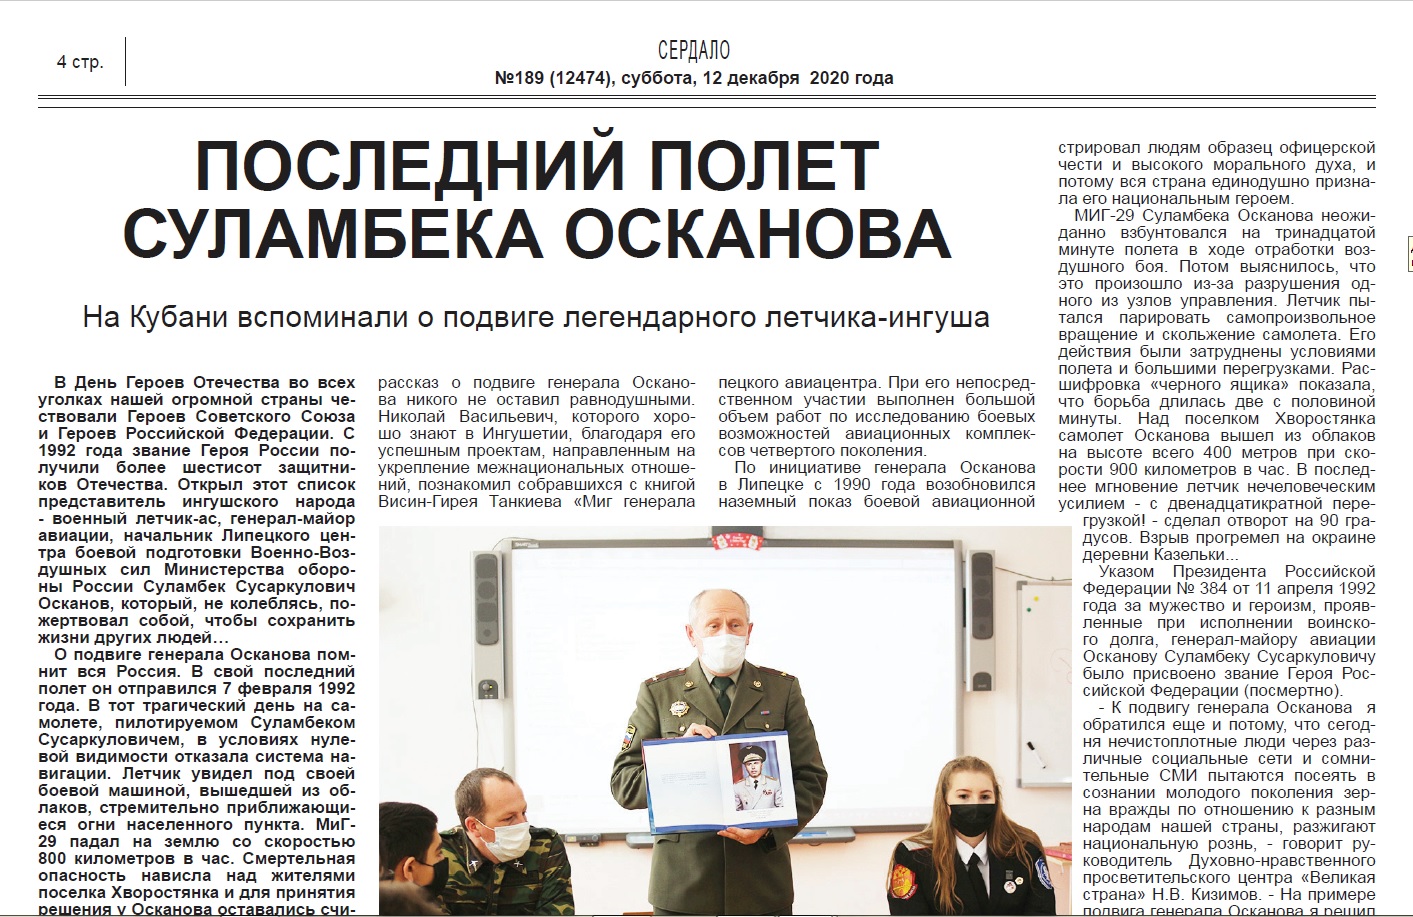 Статья об Уроке мужества в школе №39  в 189-м номере газеты "Сердало" за 2020 год